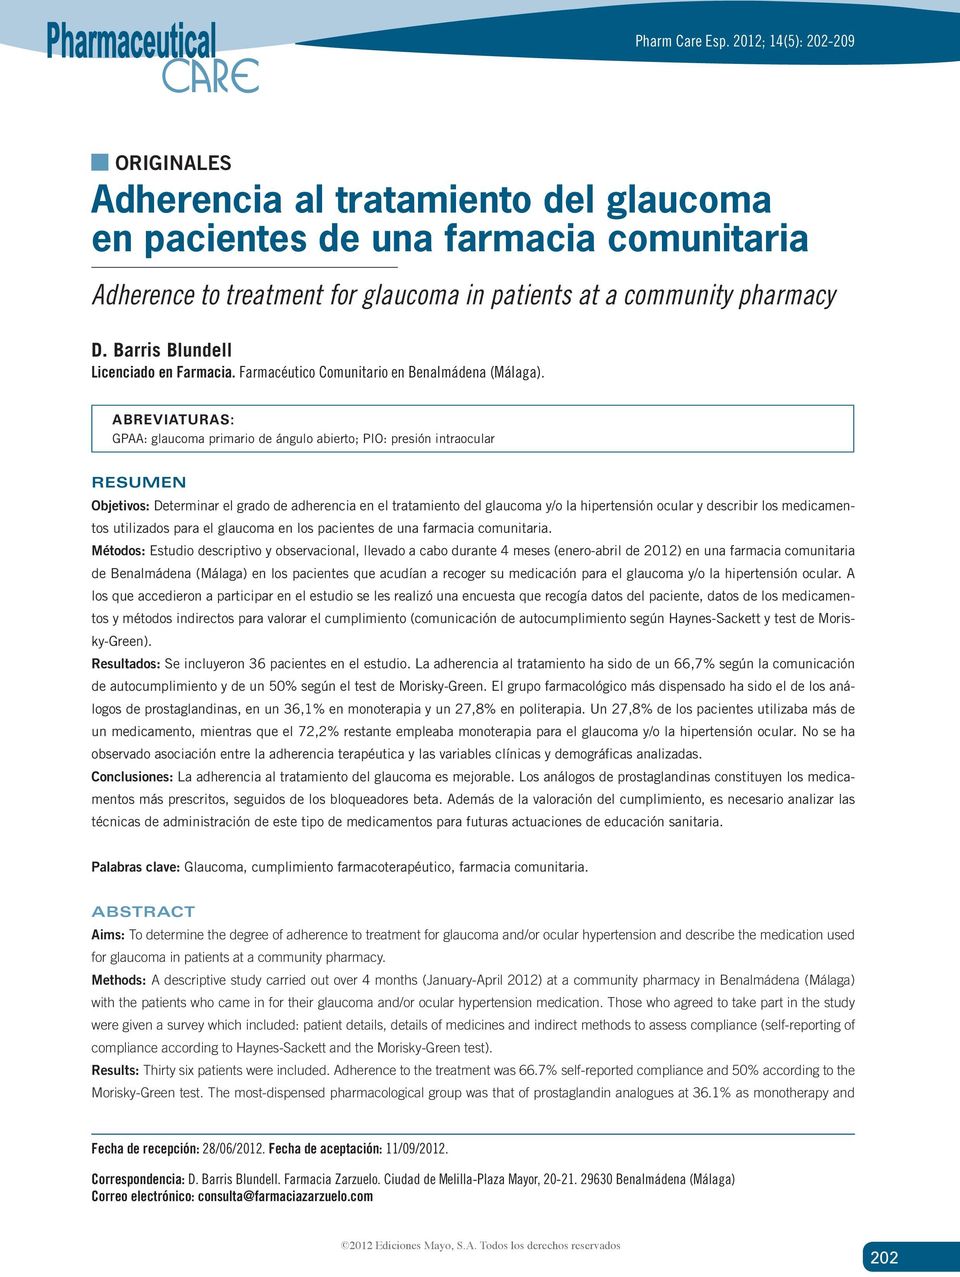 ABREVIATURAS: GPAA: glaucoma primario de ángulo abierto; PIO: presión intraocular RESUMEN Objetivos: Determinar el grado de adherencia en el tratamiento del glaucoma y/o la hipertensión ocular y